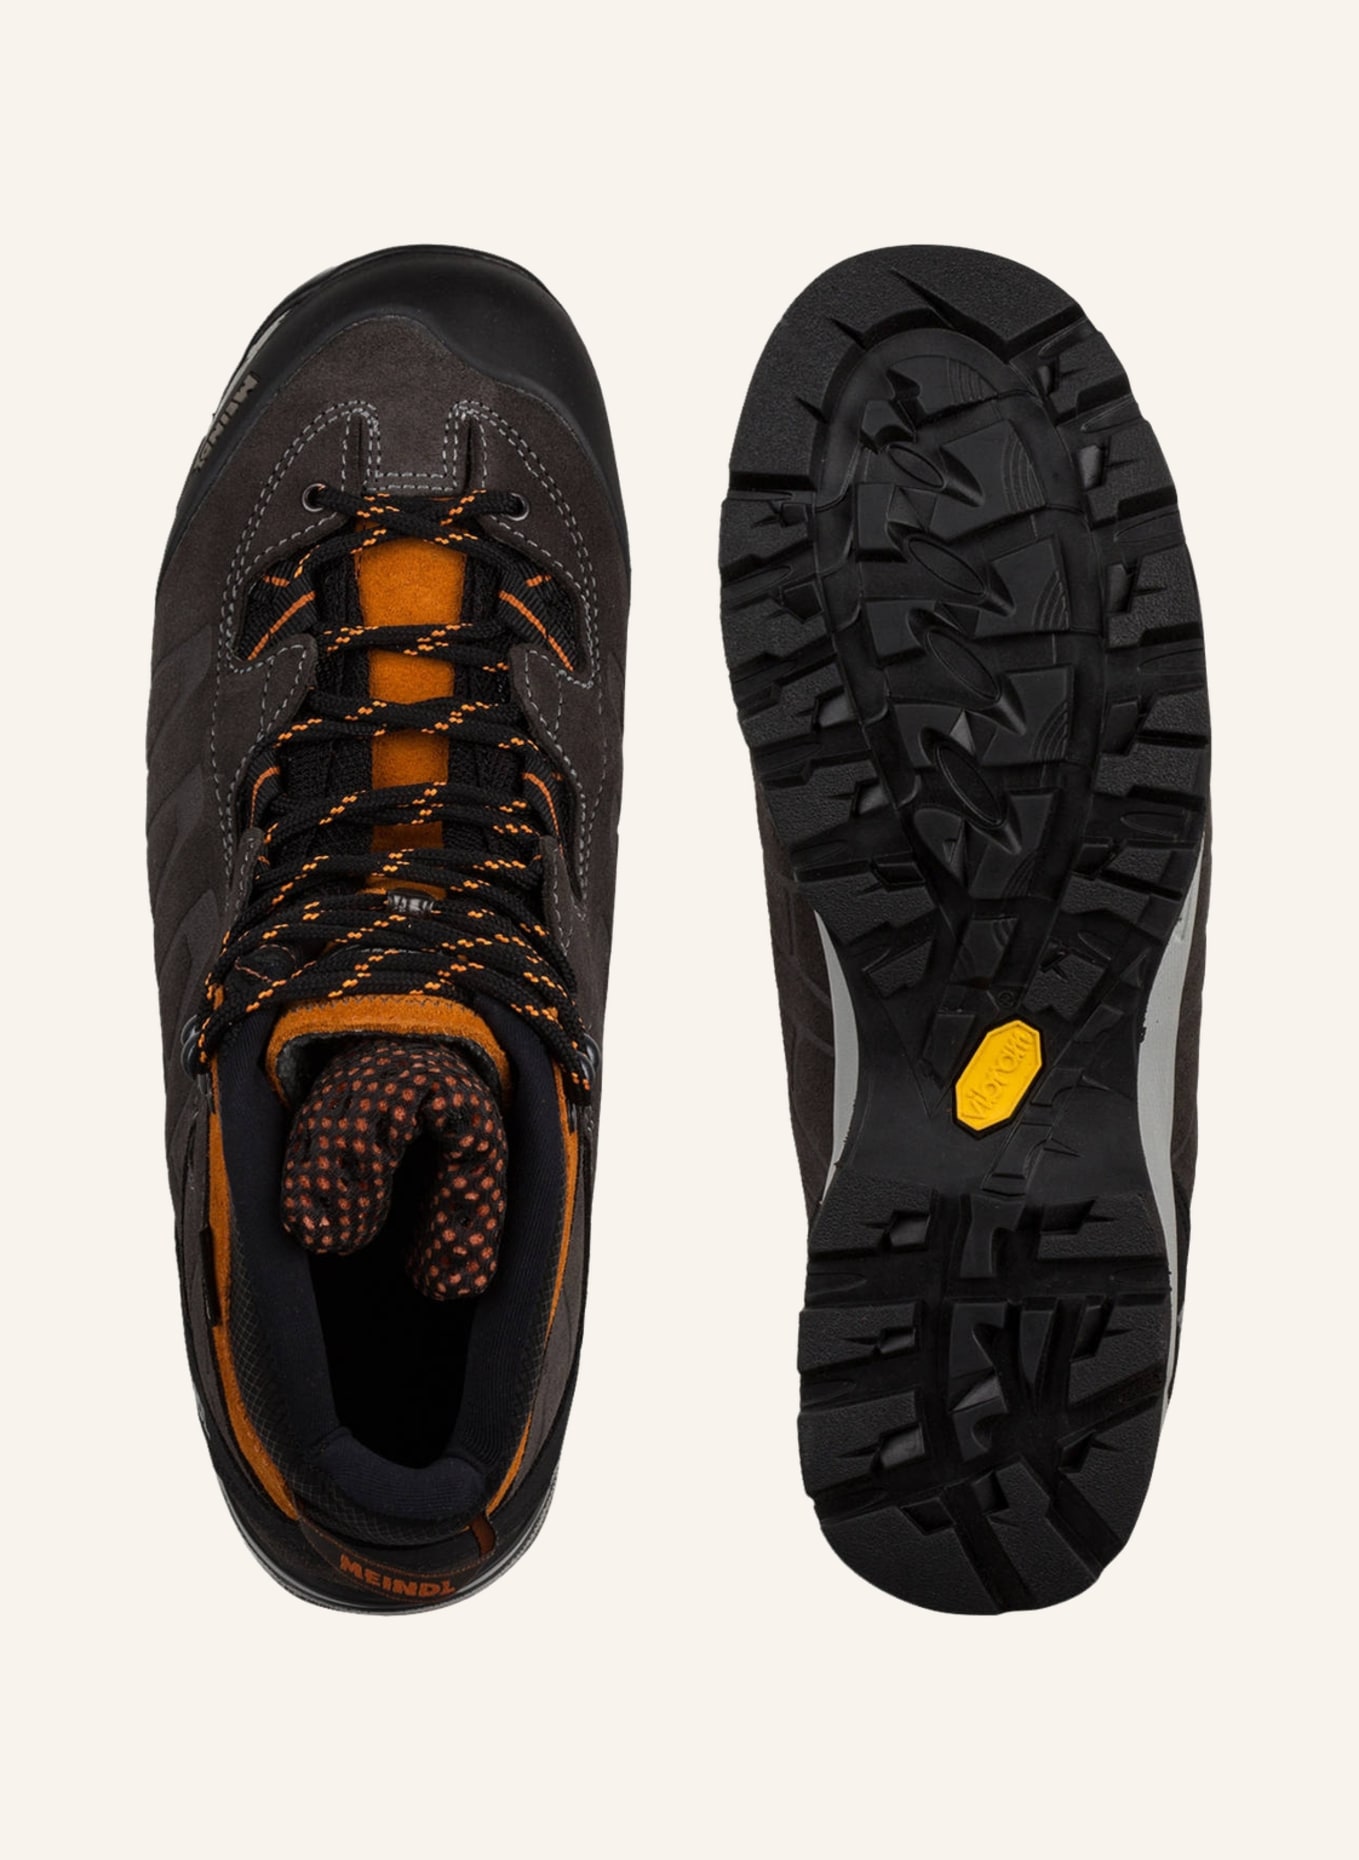 MEINDL Outdoor-Schuhe AIR REVOLUTION ULTRA, Farbe: ANTHRAZIT (Bild 5)